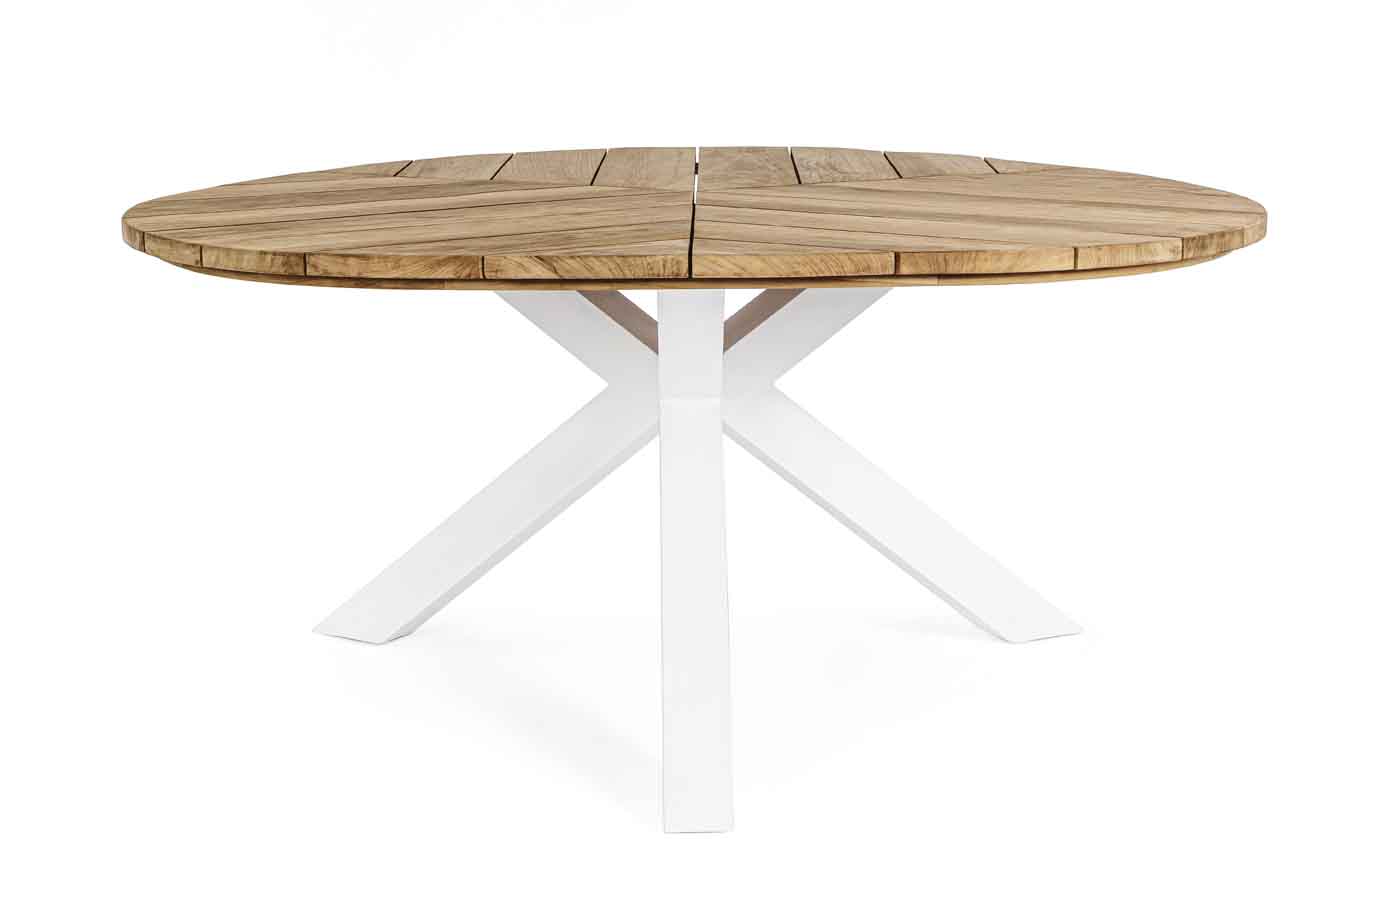 Wunderschöner Gartentisch Palmdale mit runder Platte. Der Tisch besteht aus einer Platte aus Teakholz und einem Gestell aus Aluminium